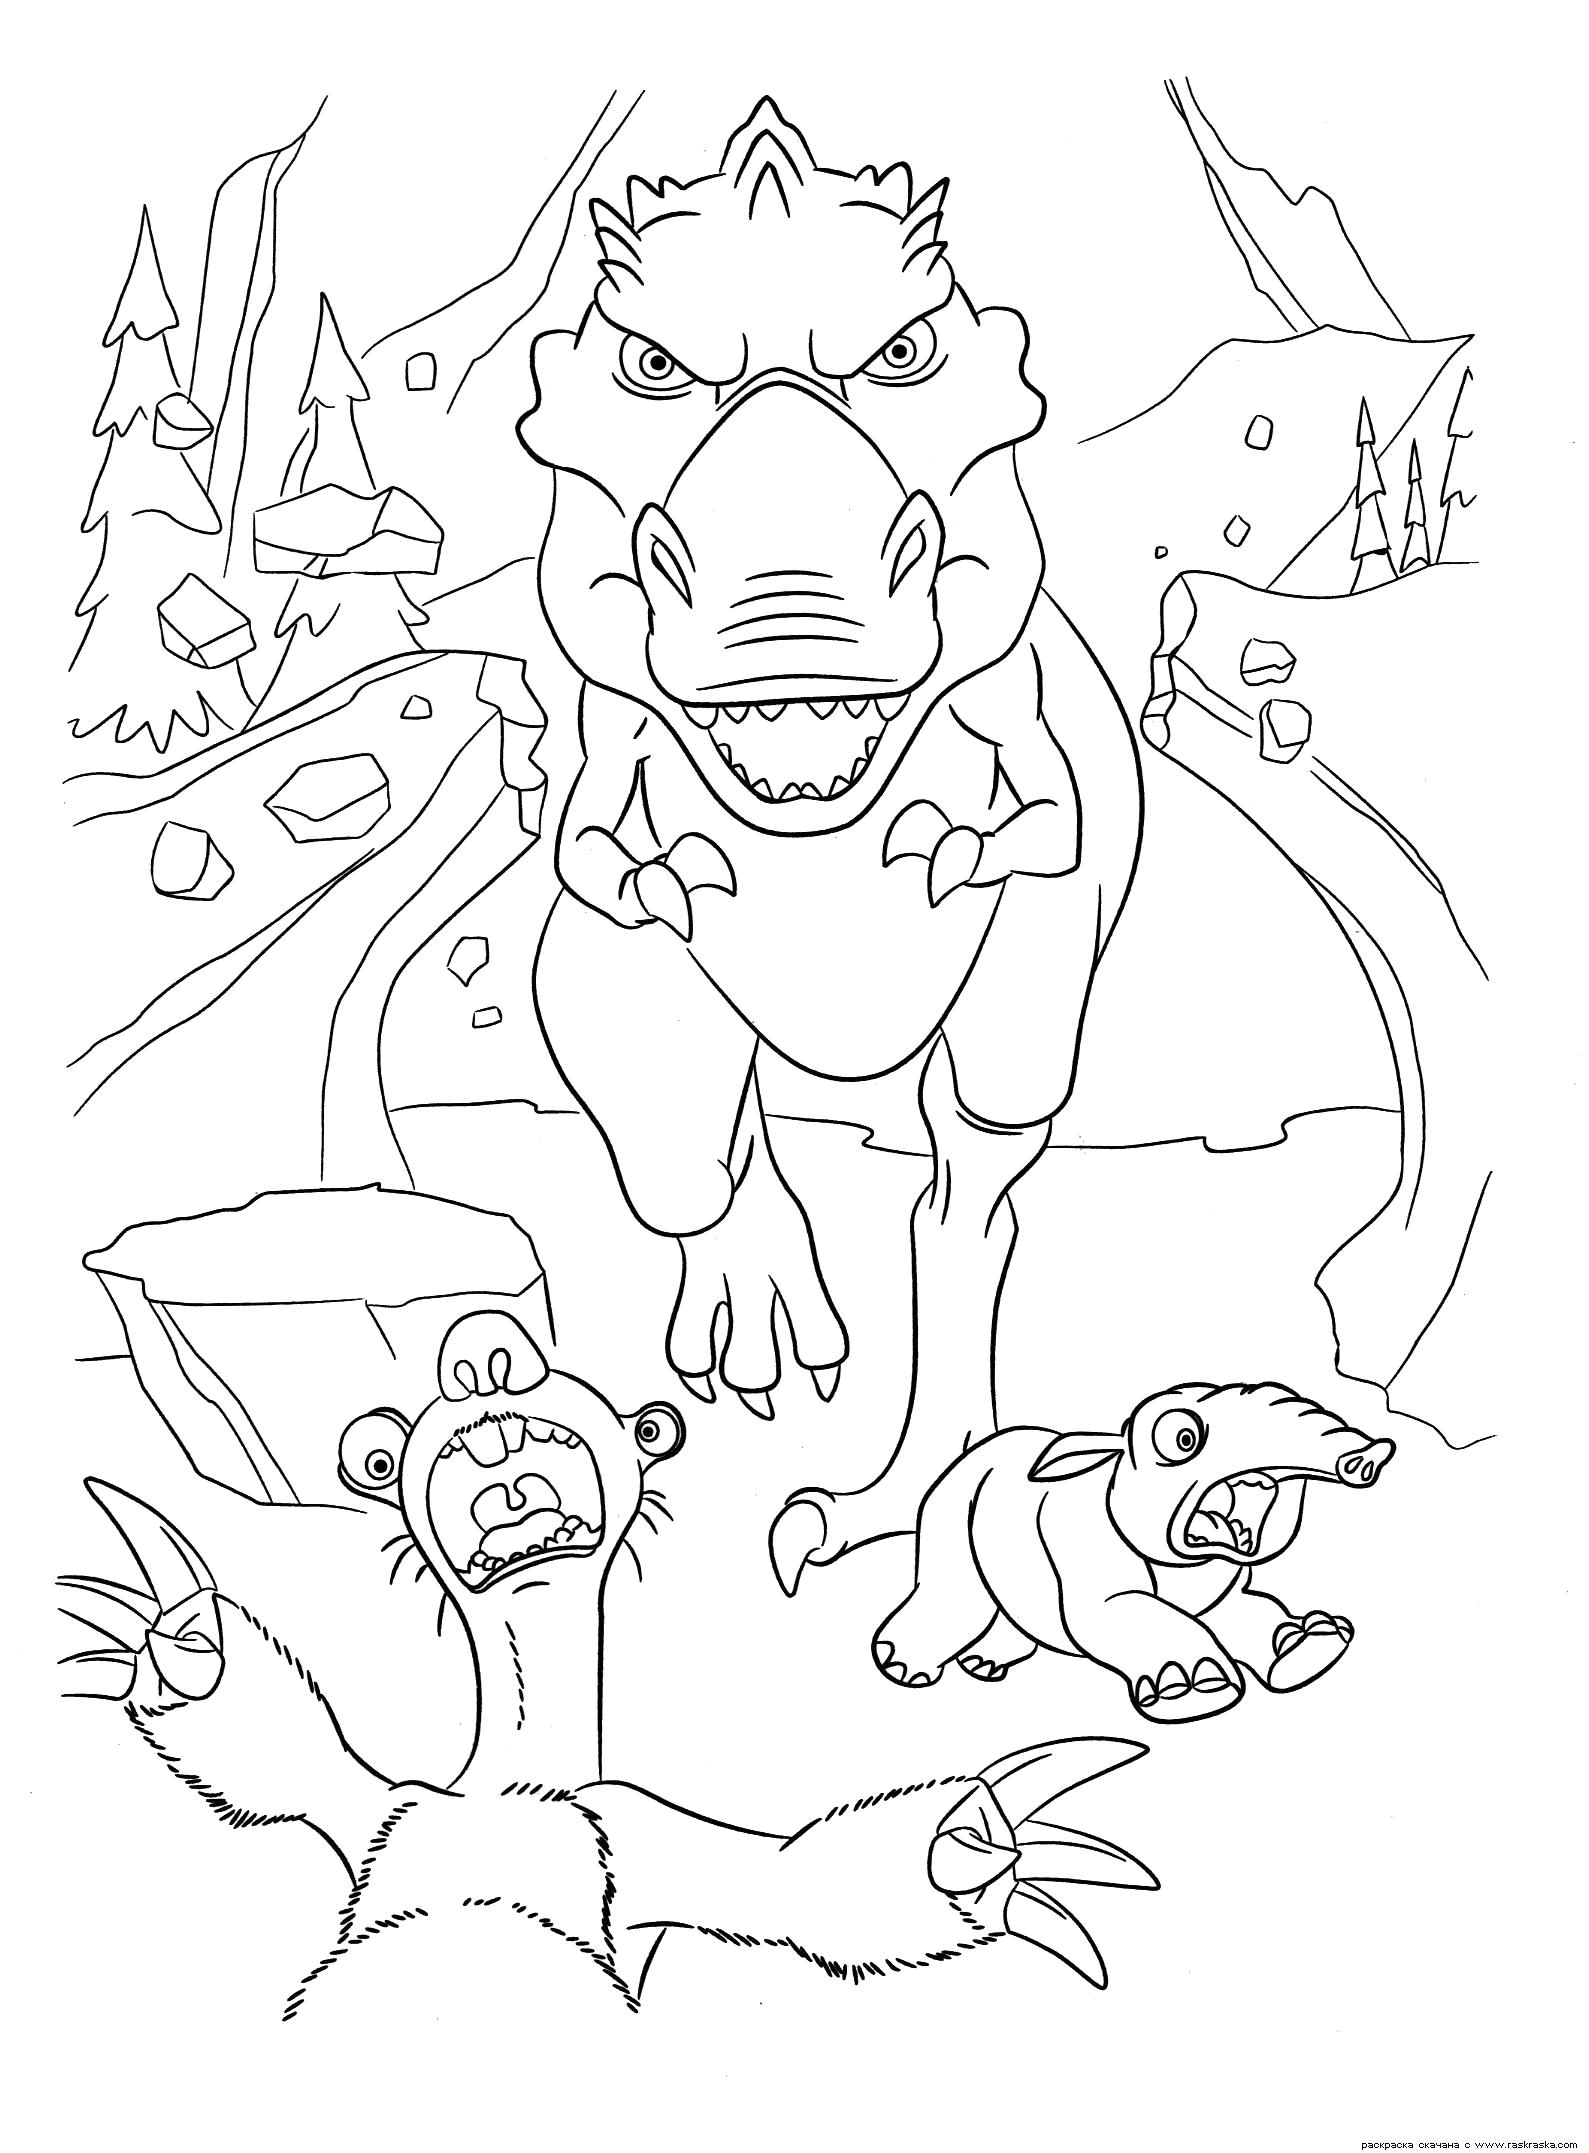 Раскраска  Сид в панике.  Ленивец Сид и динозавр из мультфильма Ледниковый период 3. Эра динозавров.  для детей с динозавром. Скачать динозавр.  Распечатать динозавр